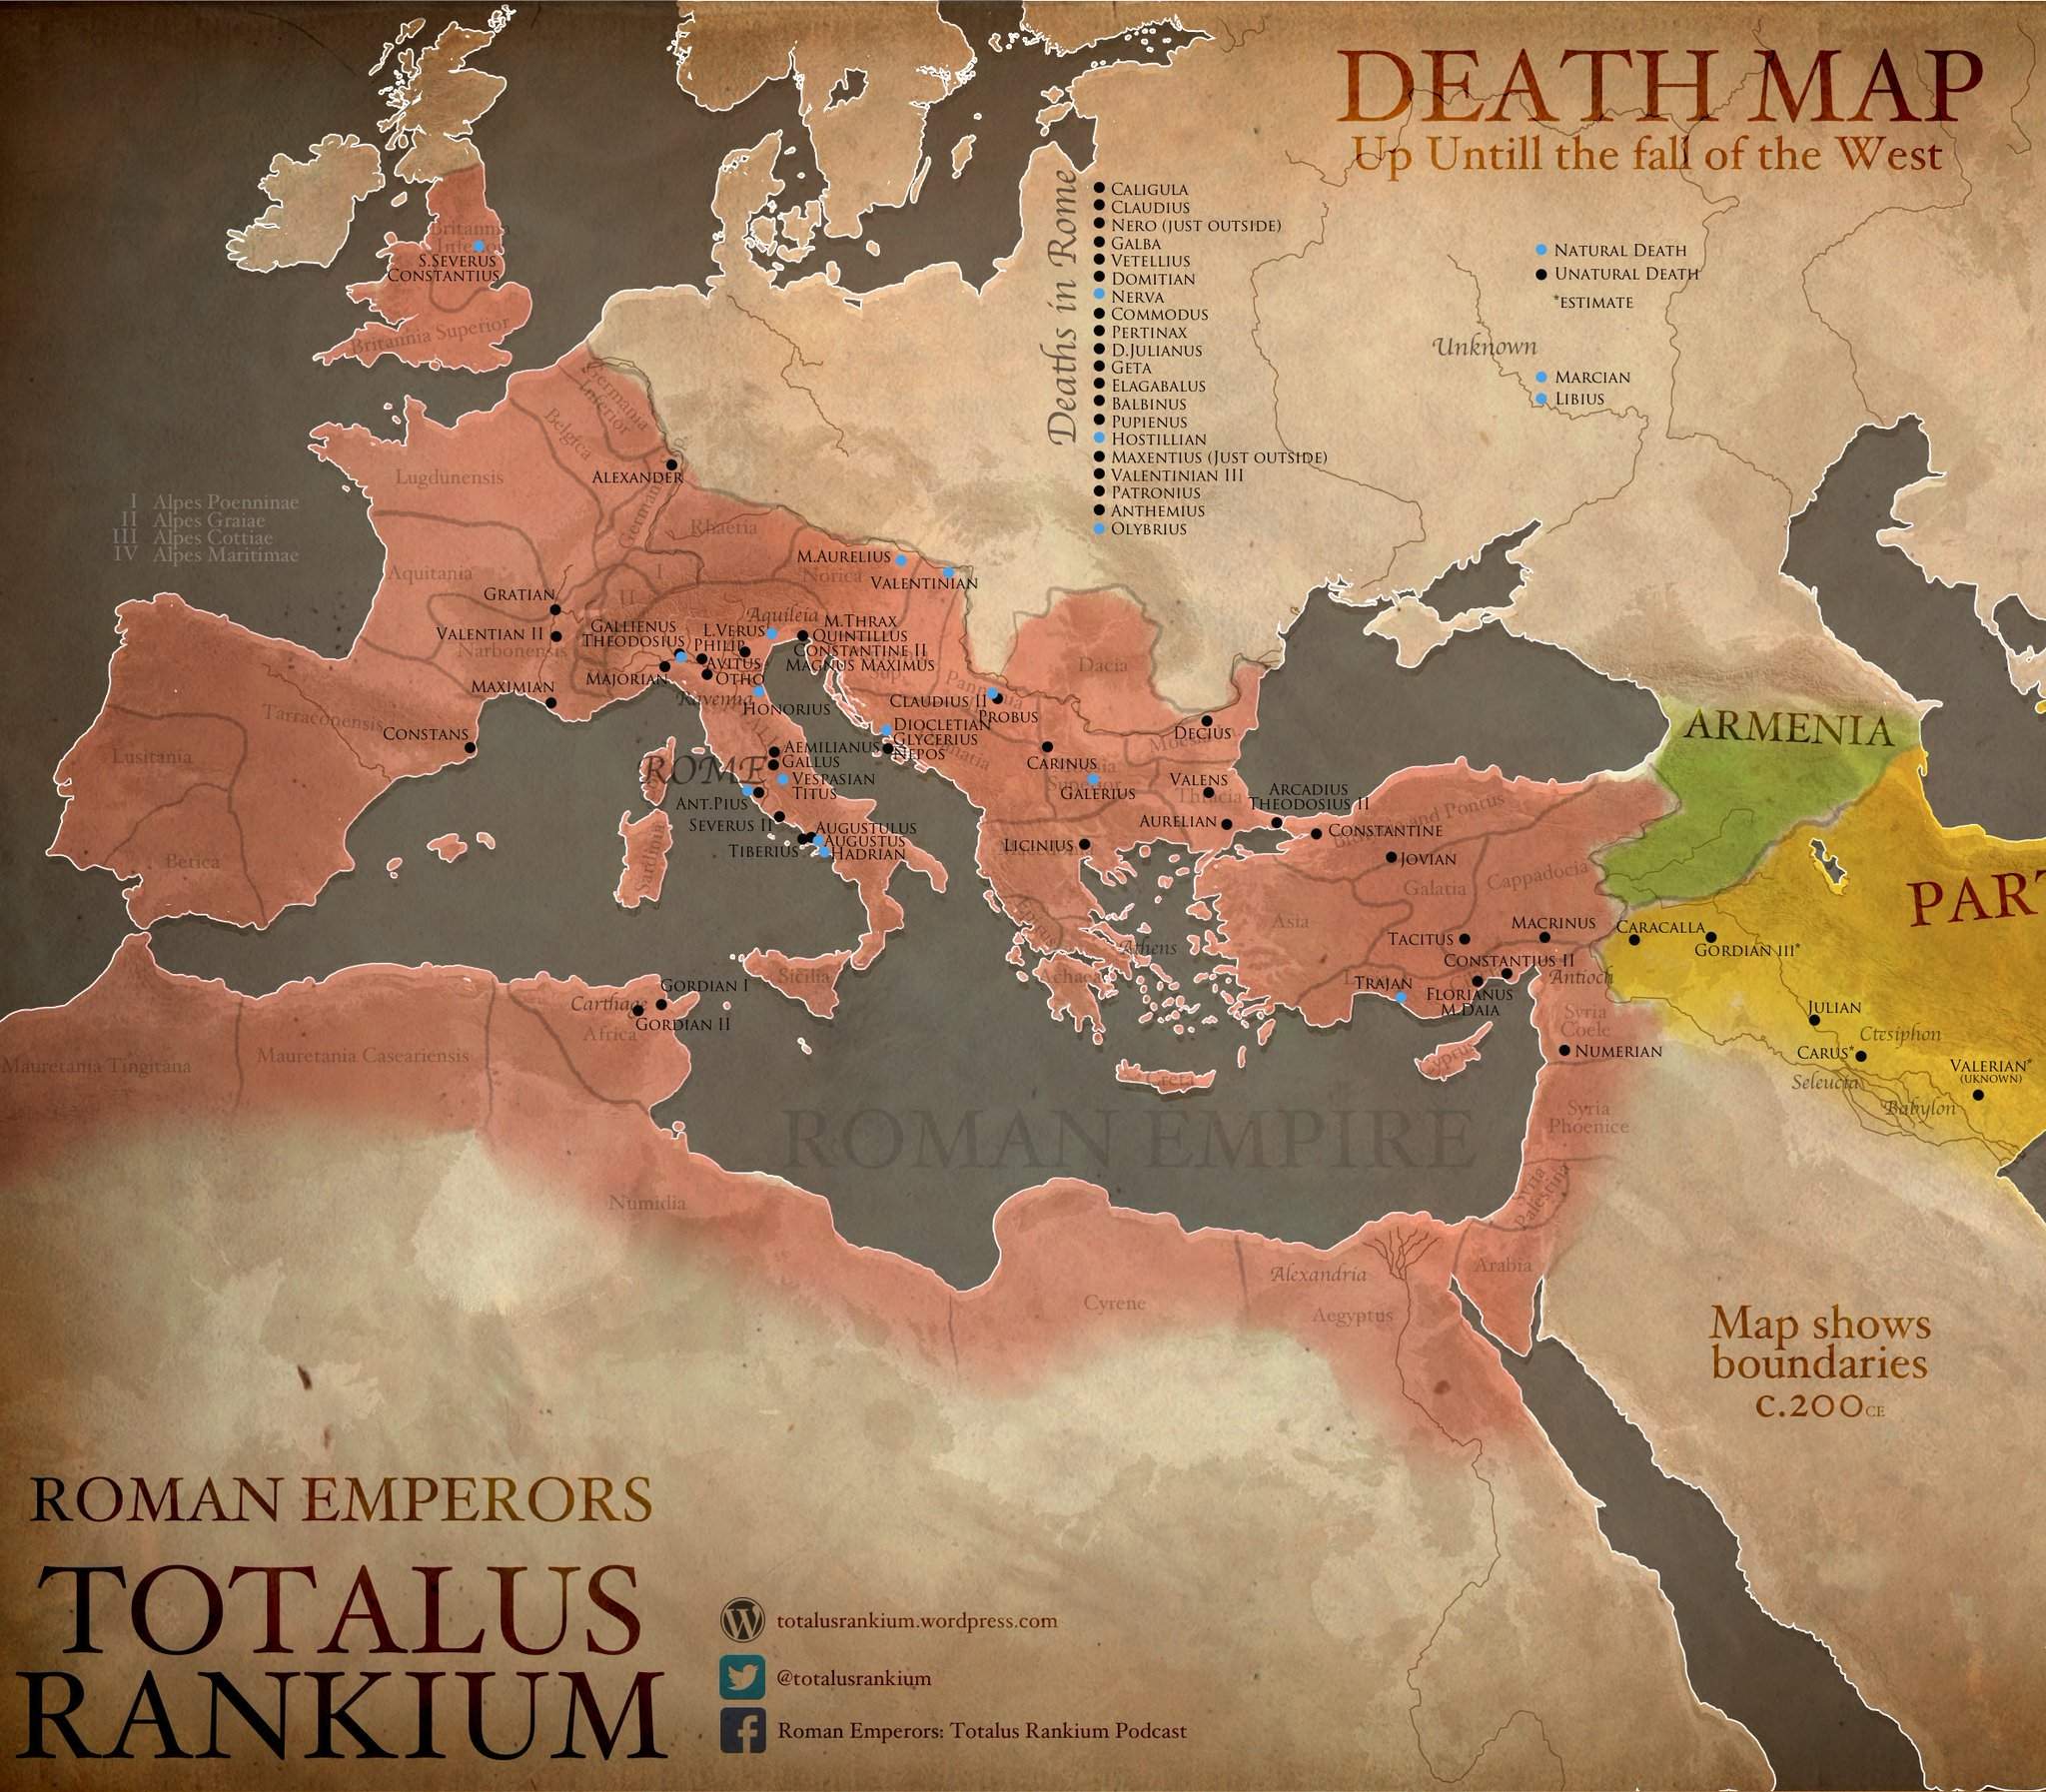 Roman_Emperor_Death_Map2.jpg